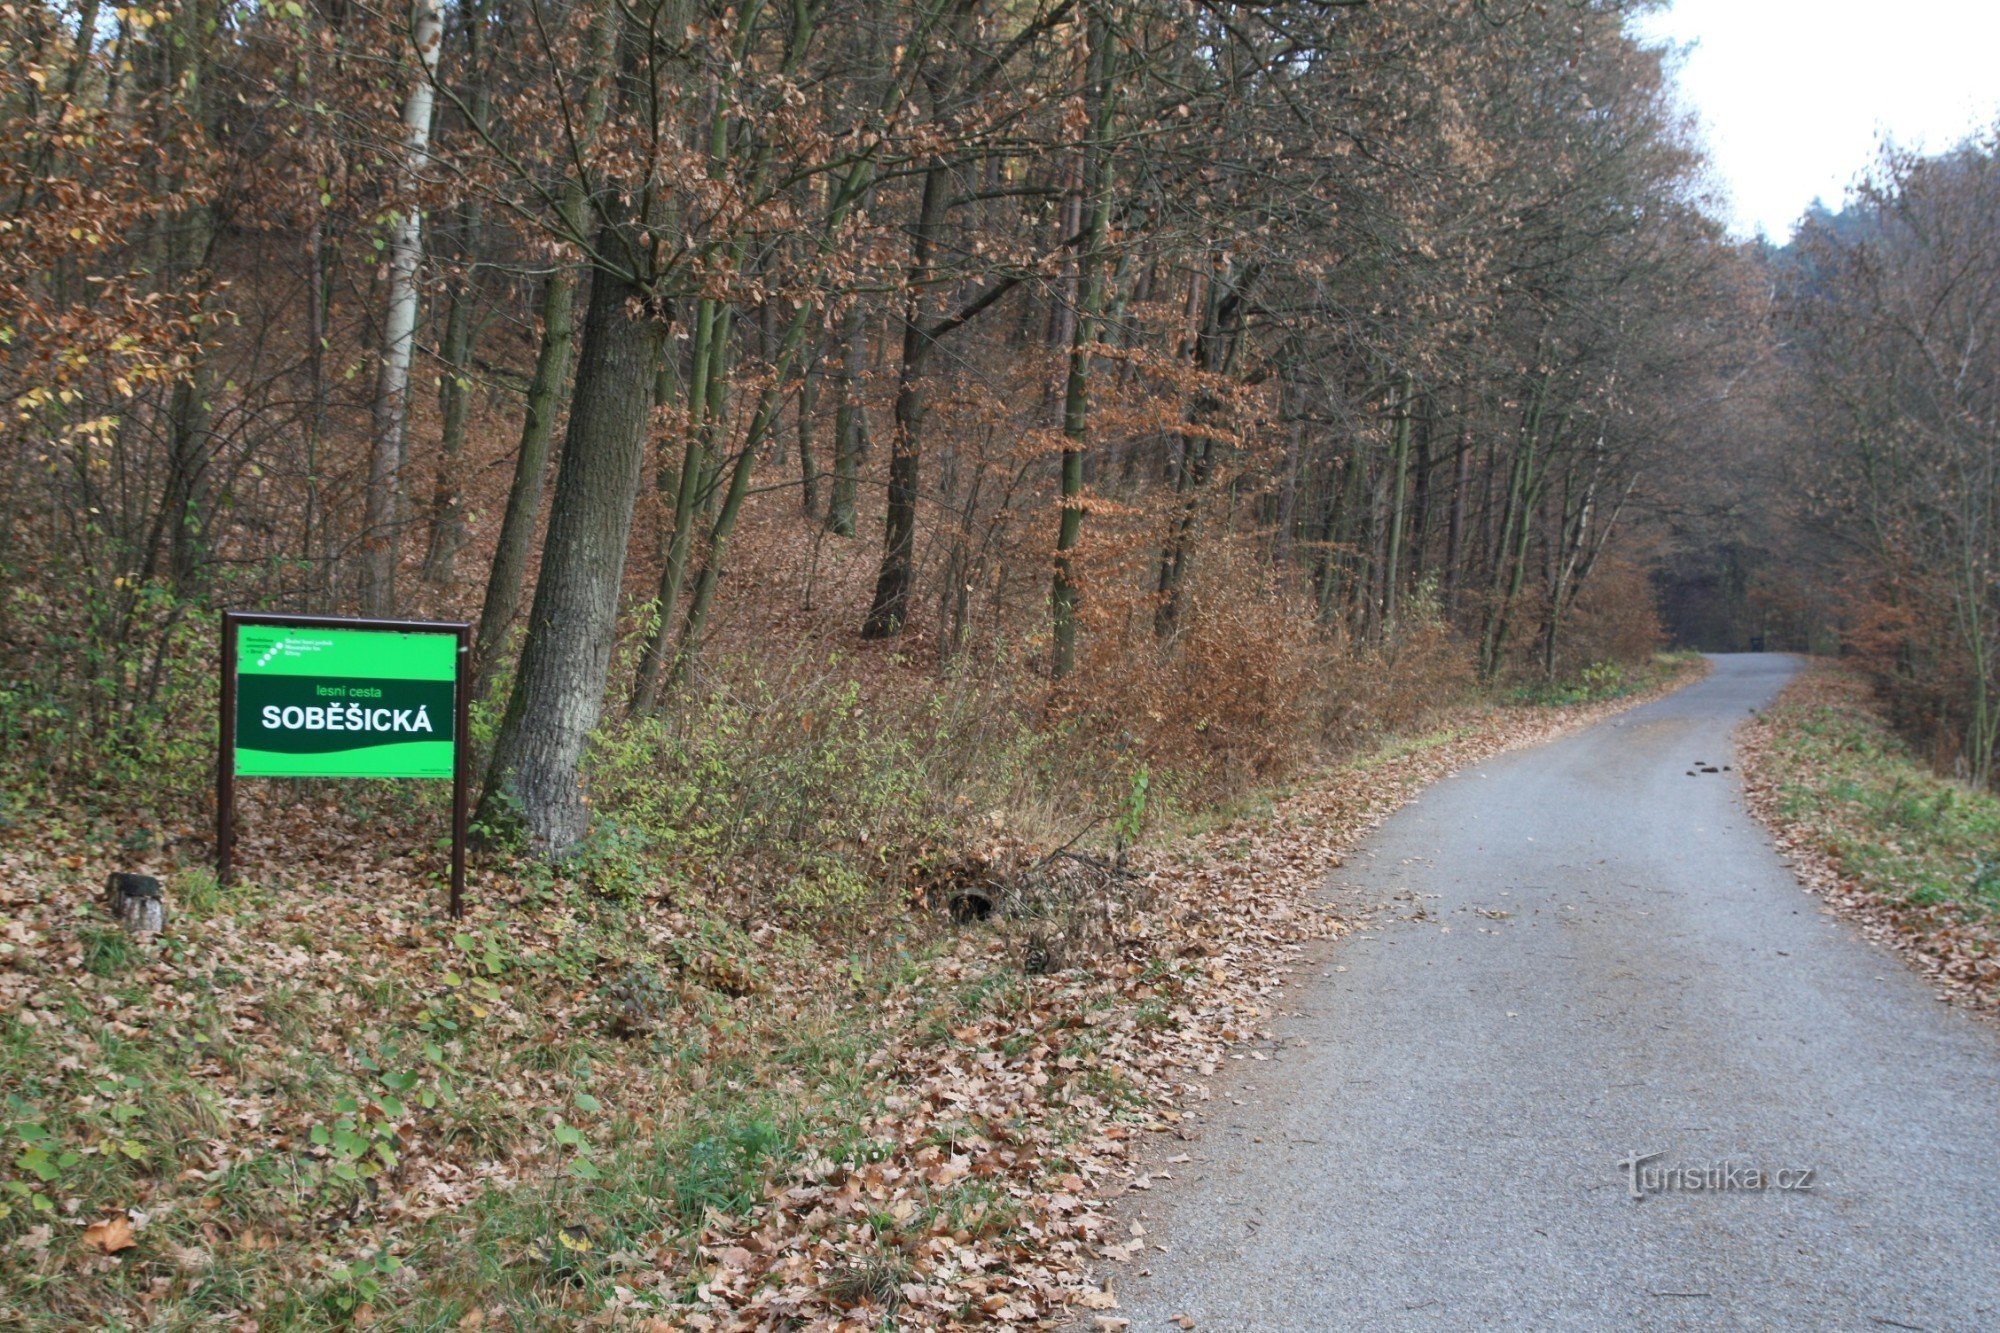 Soběšická cesta begynder for enden af ​​landsbyen ved begyndelsen af ​​skoven